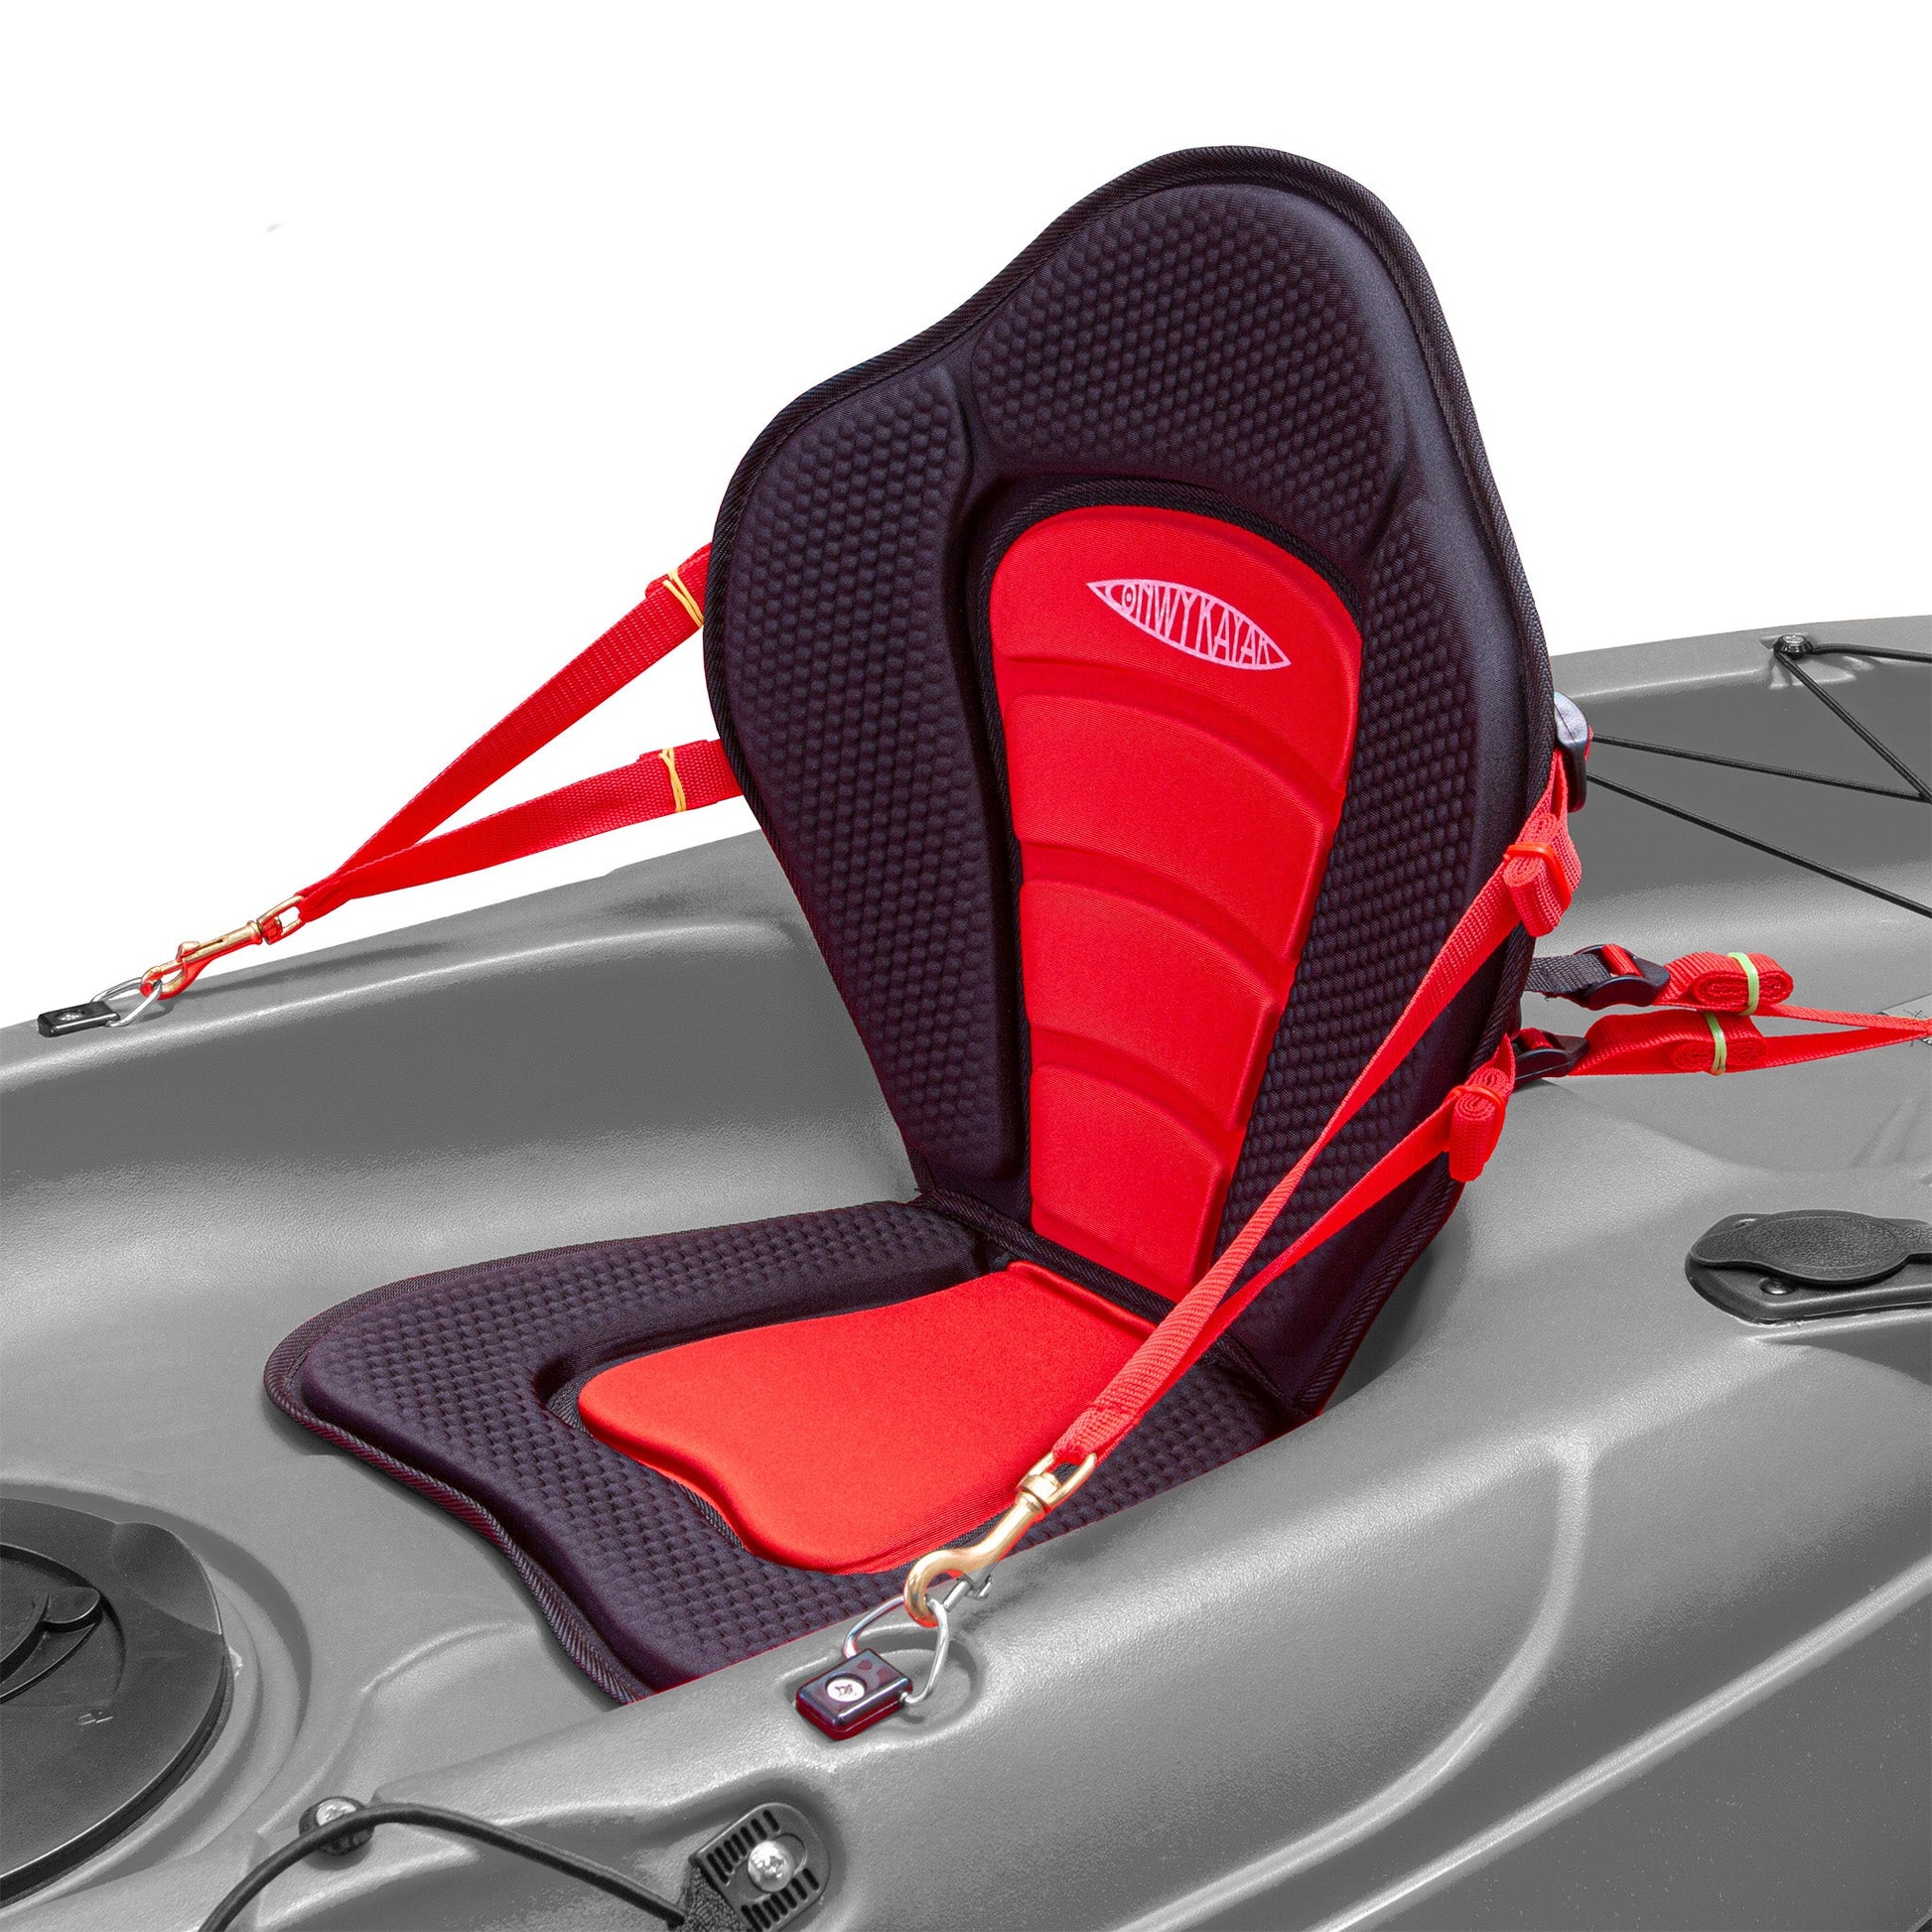 Conwy Kayak - High Performance Adjustable Kayak Seat